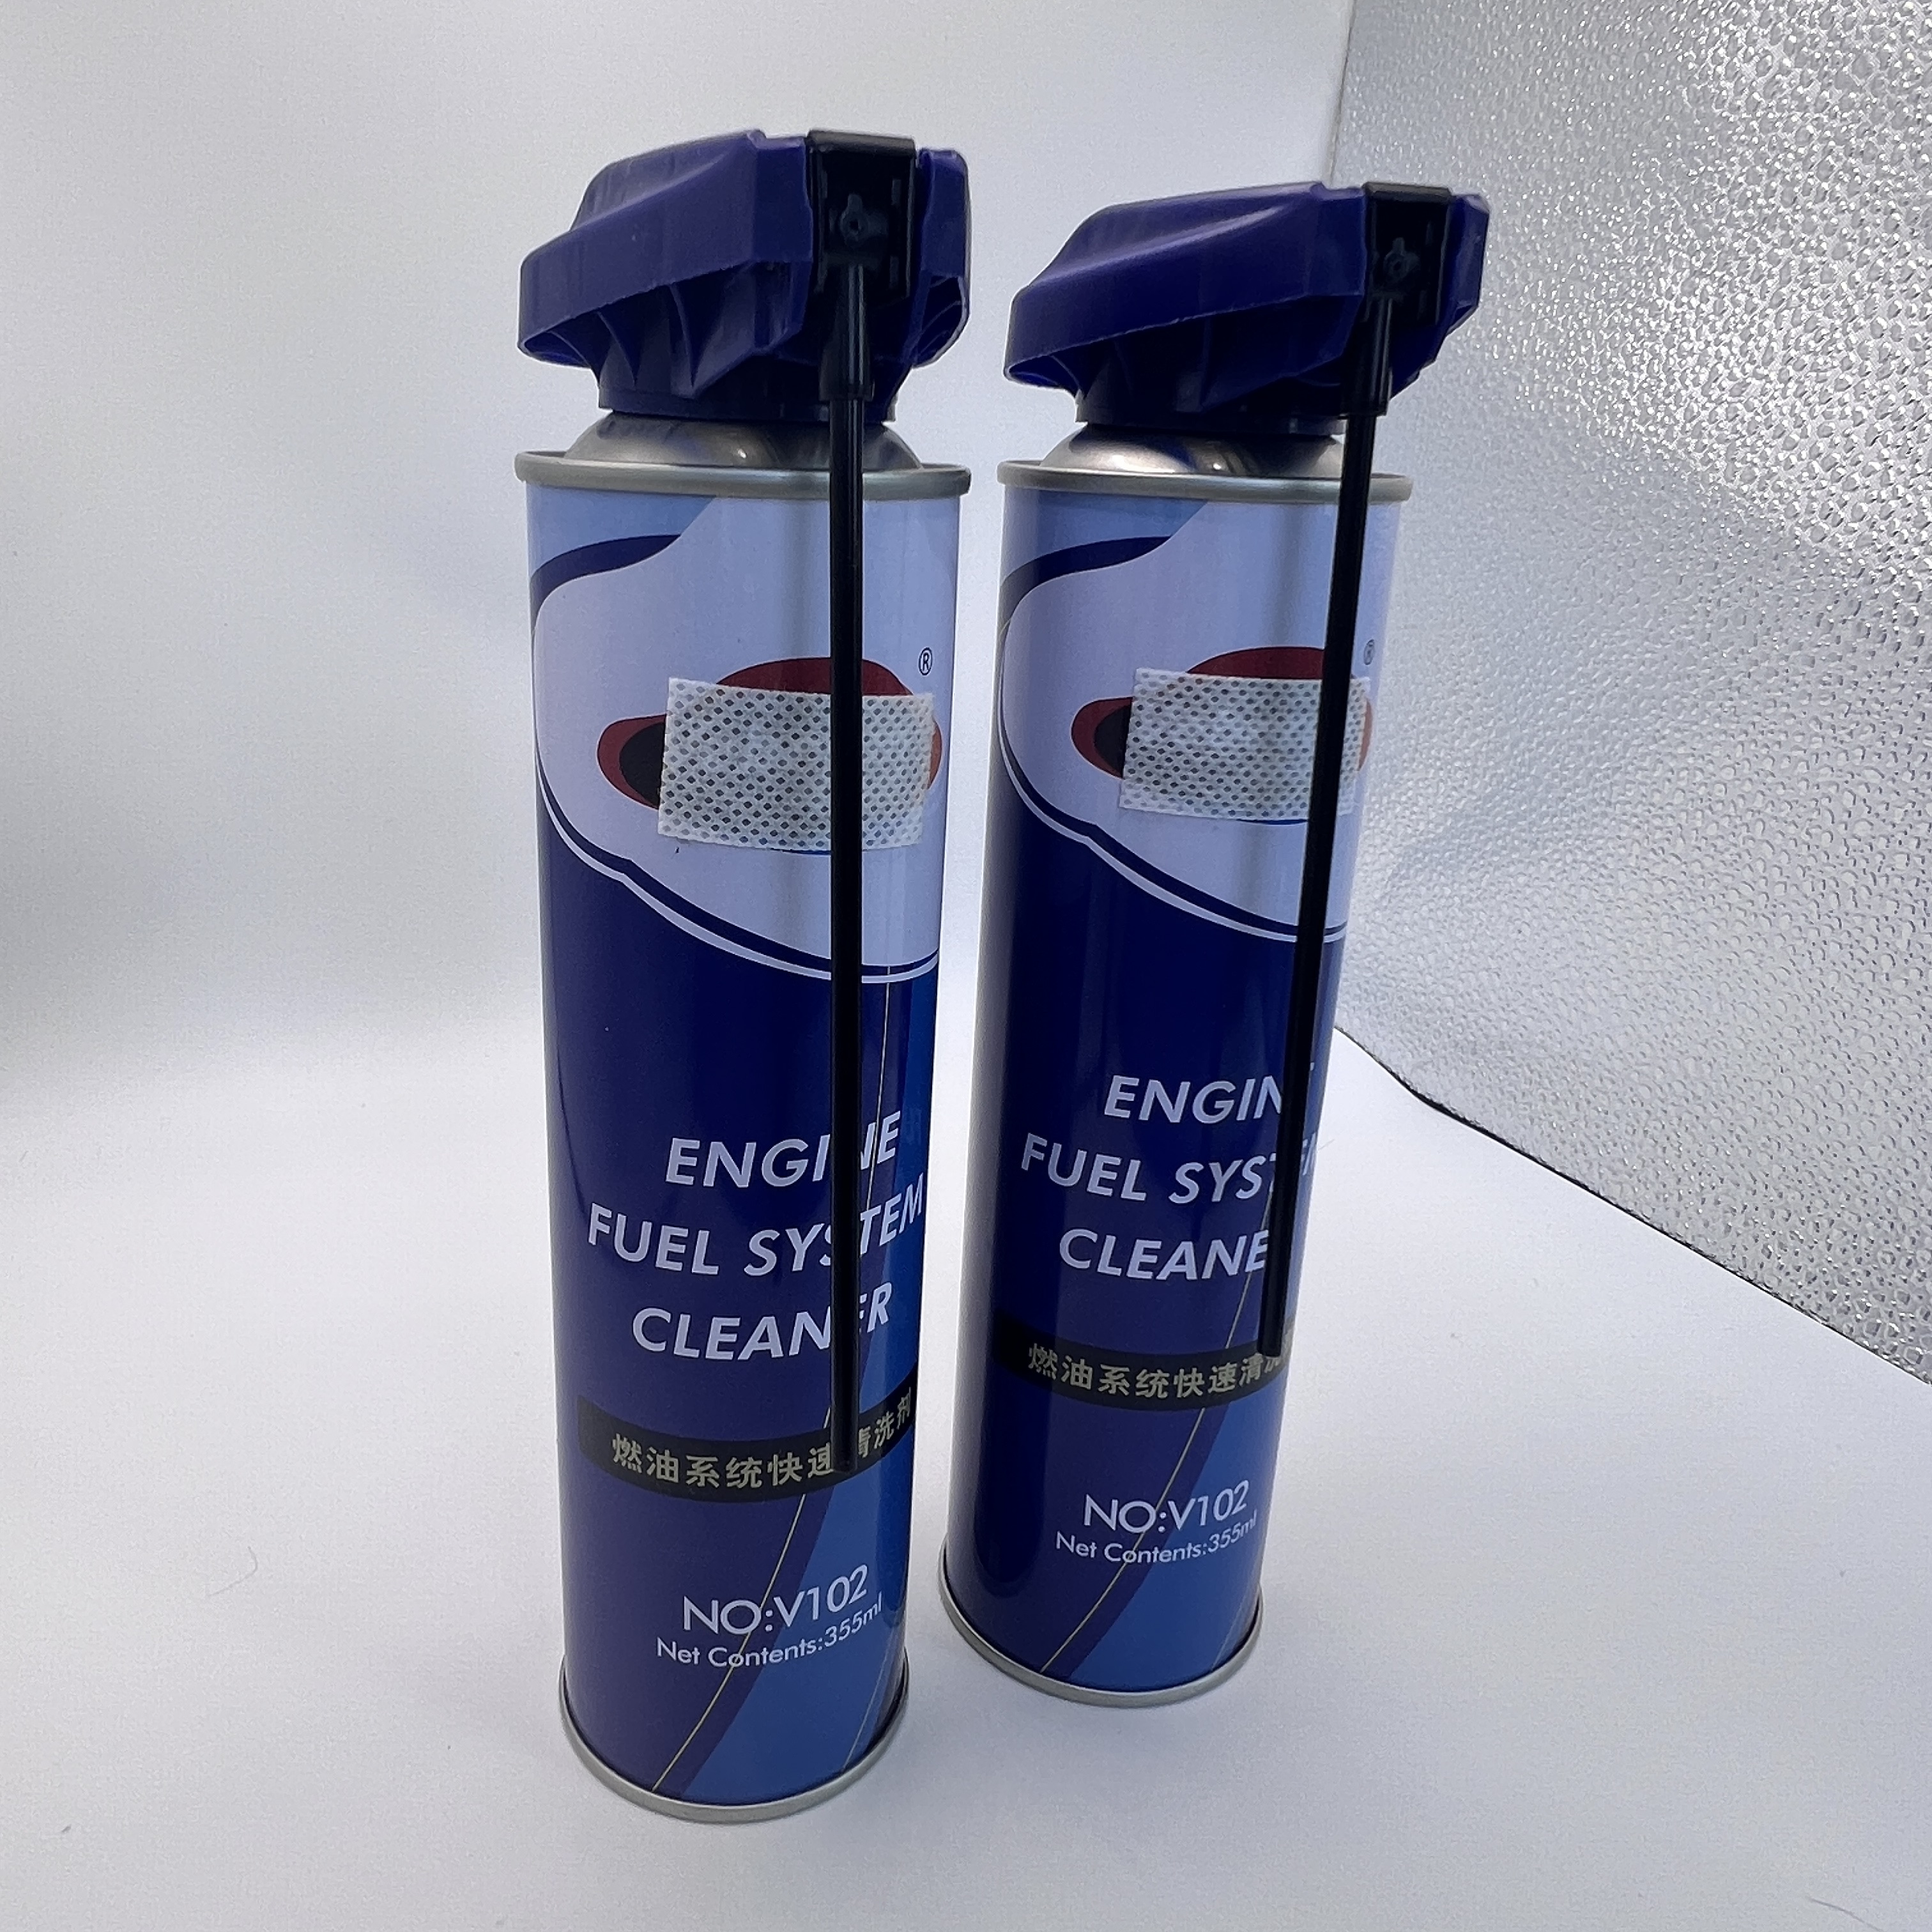 Válvula de pulverización de aerosol anti -clog: solución confiable para prevenir bloqueos